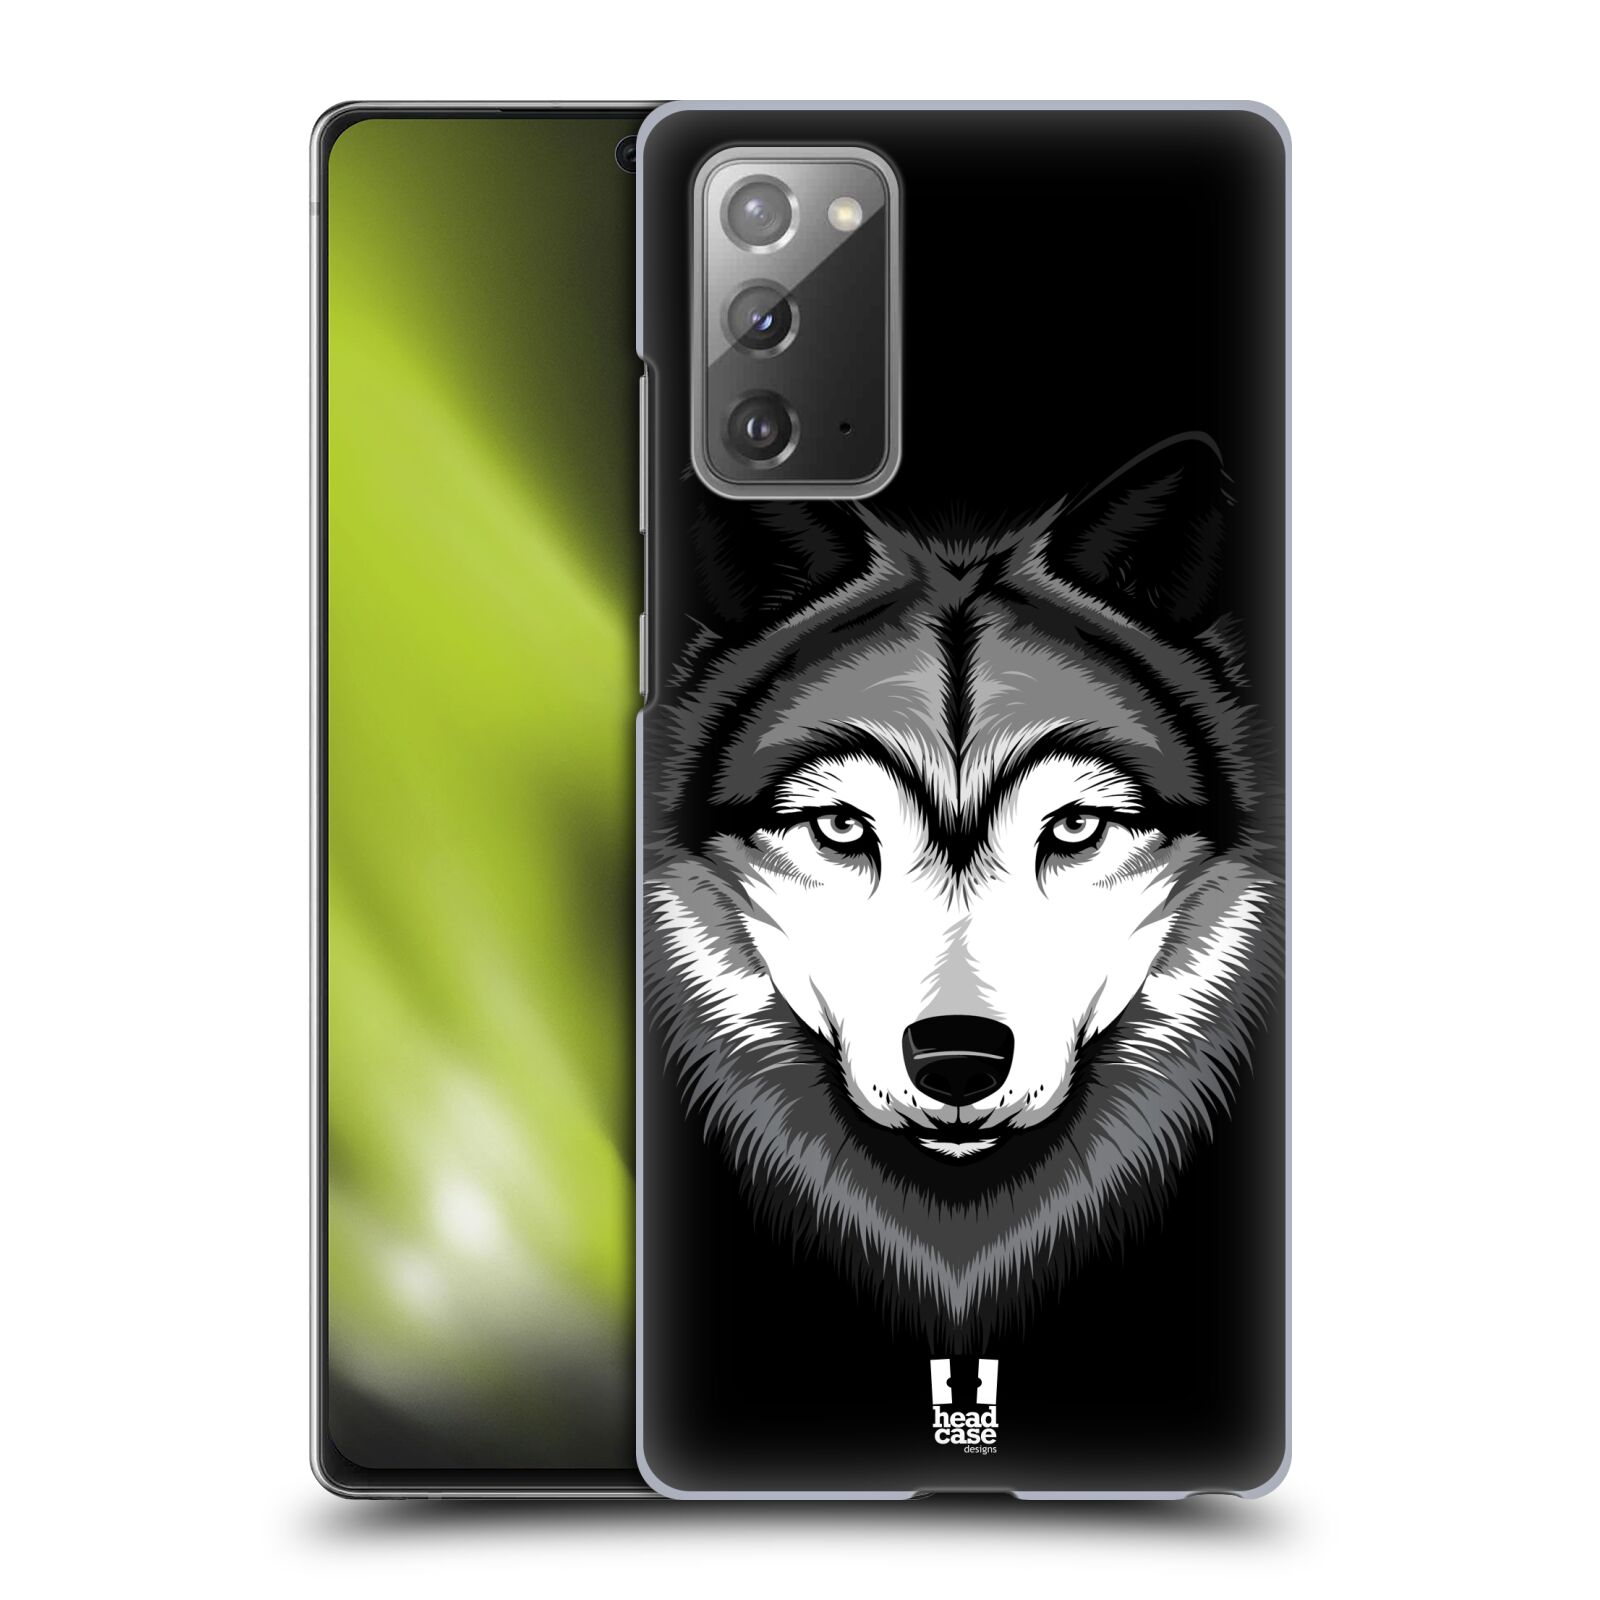 Plastový obal HEAD CASE na mobil Samsung Galaxy Note 20 vzor Zvíře kreslená tvář 2 vlk